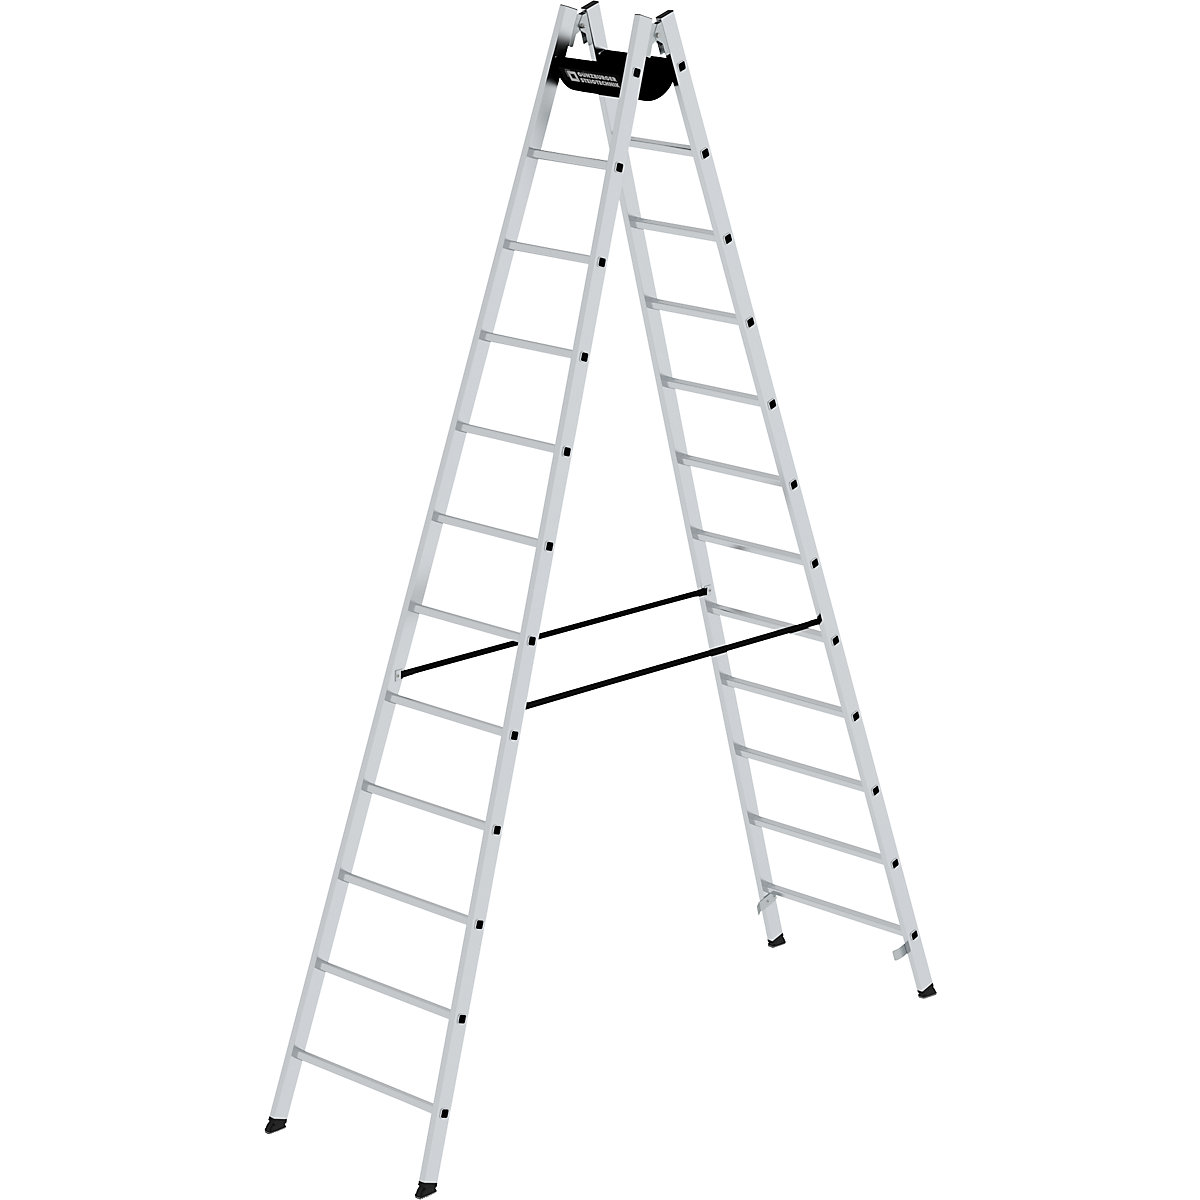 Bezpečnostný rebrík s priečkami, pochôdzny z oboch strán – MUNK, priečky 30 x 30 mm, nešmykľavé, 2 x 12 priečok-8